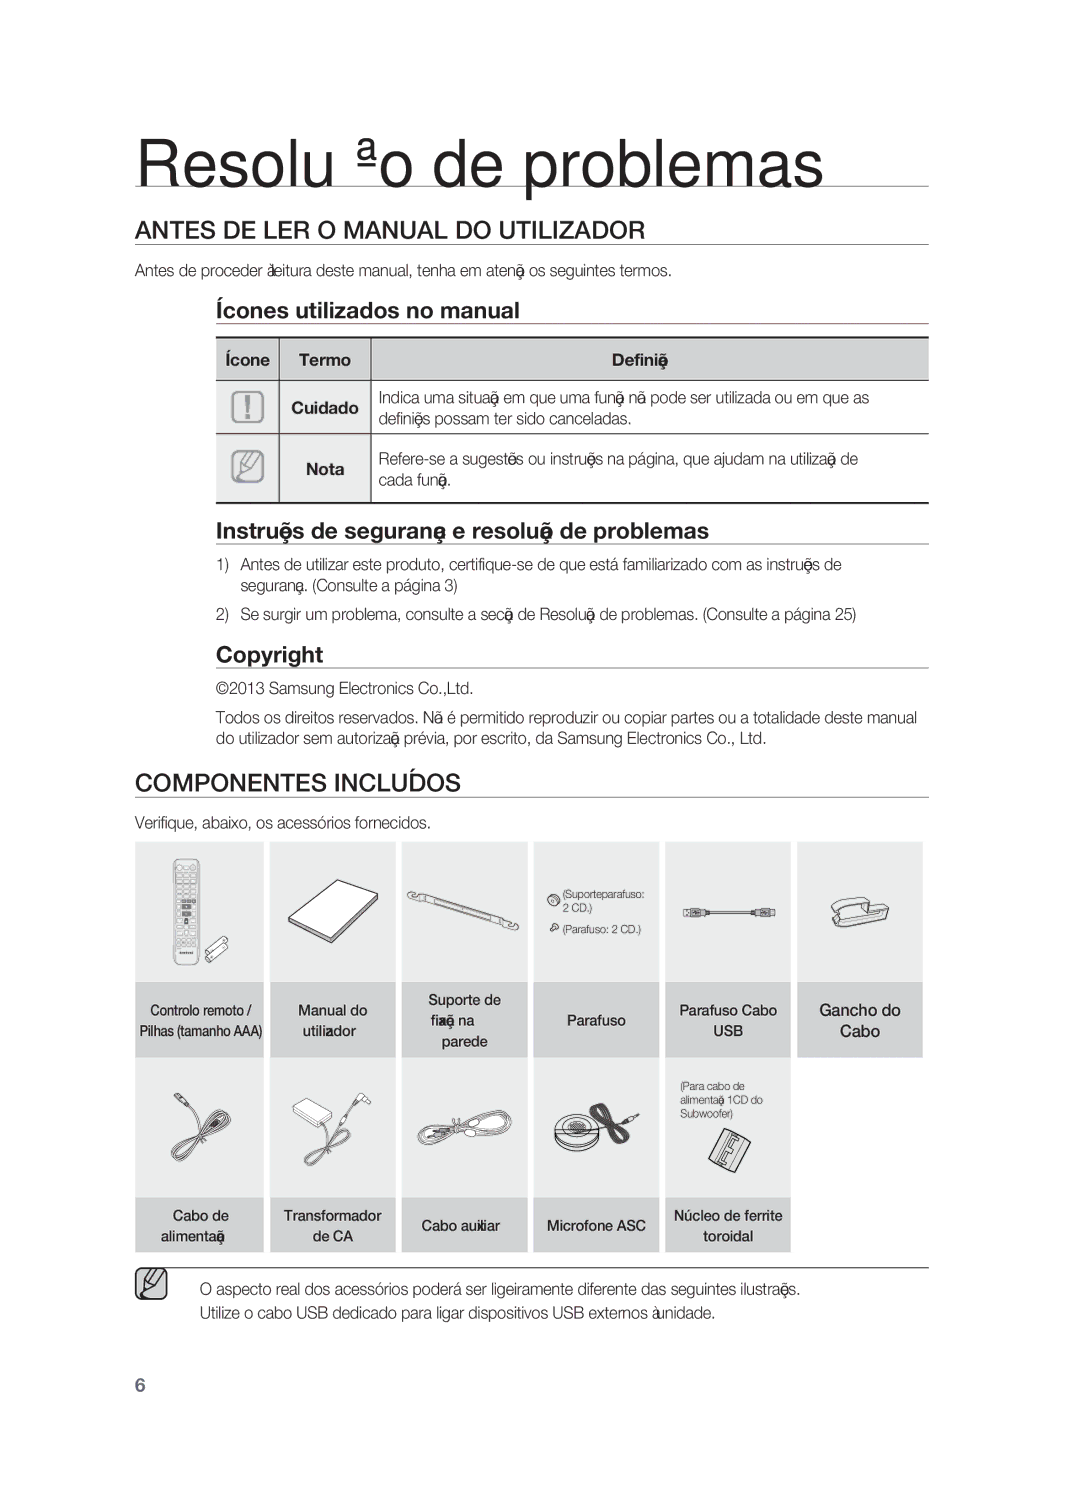 Samsung HW-F850/ZF manual Resolução de problemas, Antes DE LER O Manual do Utilizador, Componentes Incluídos 